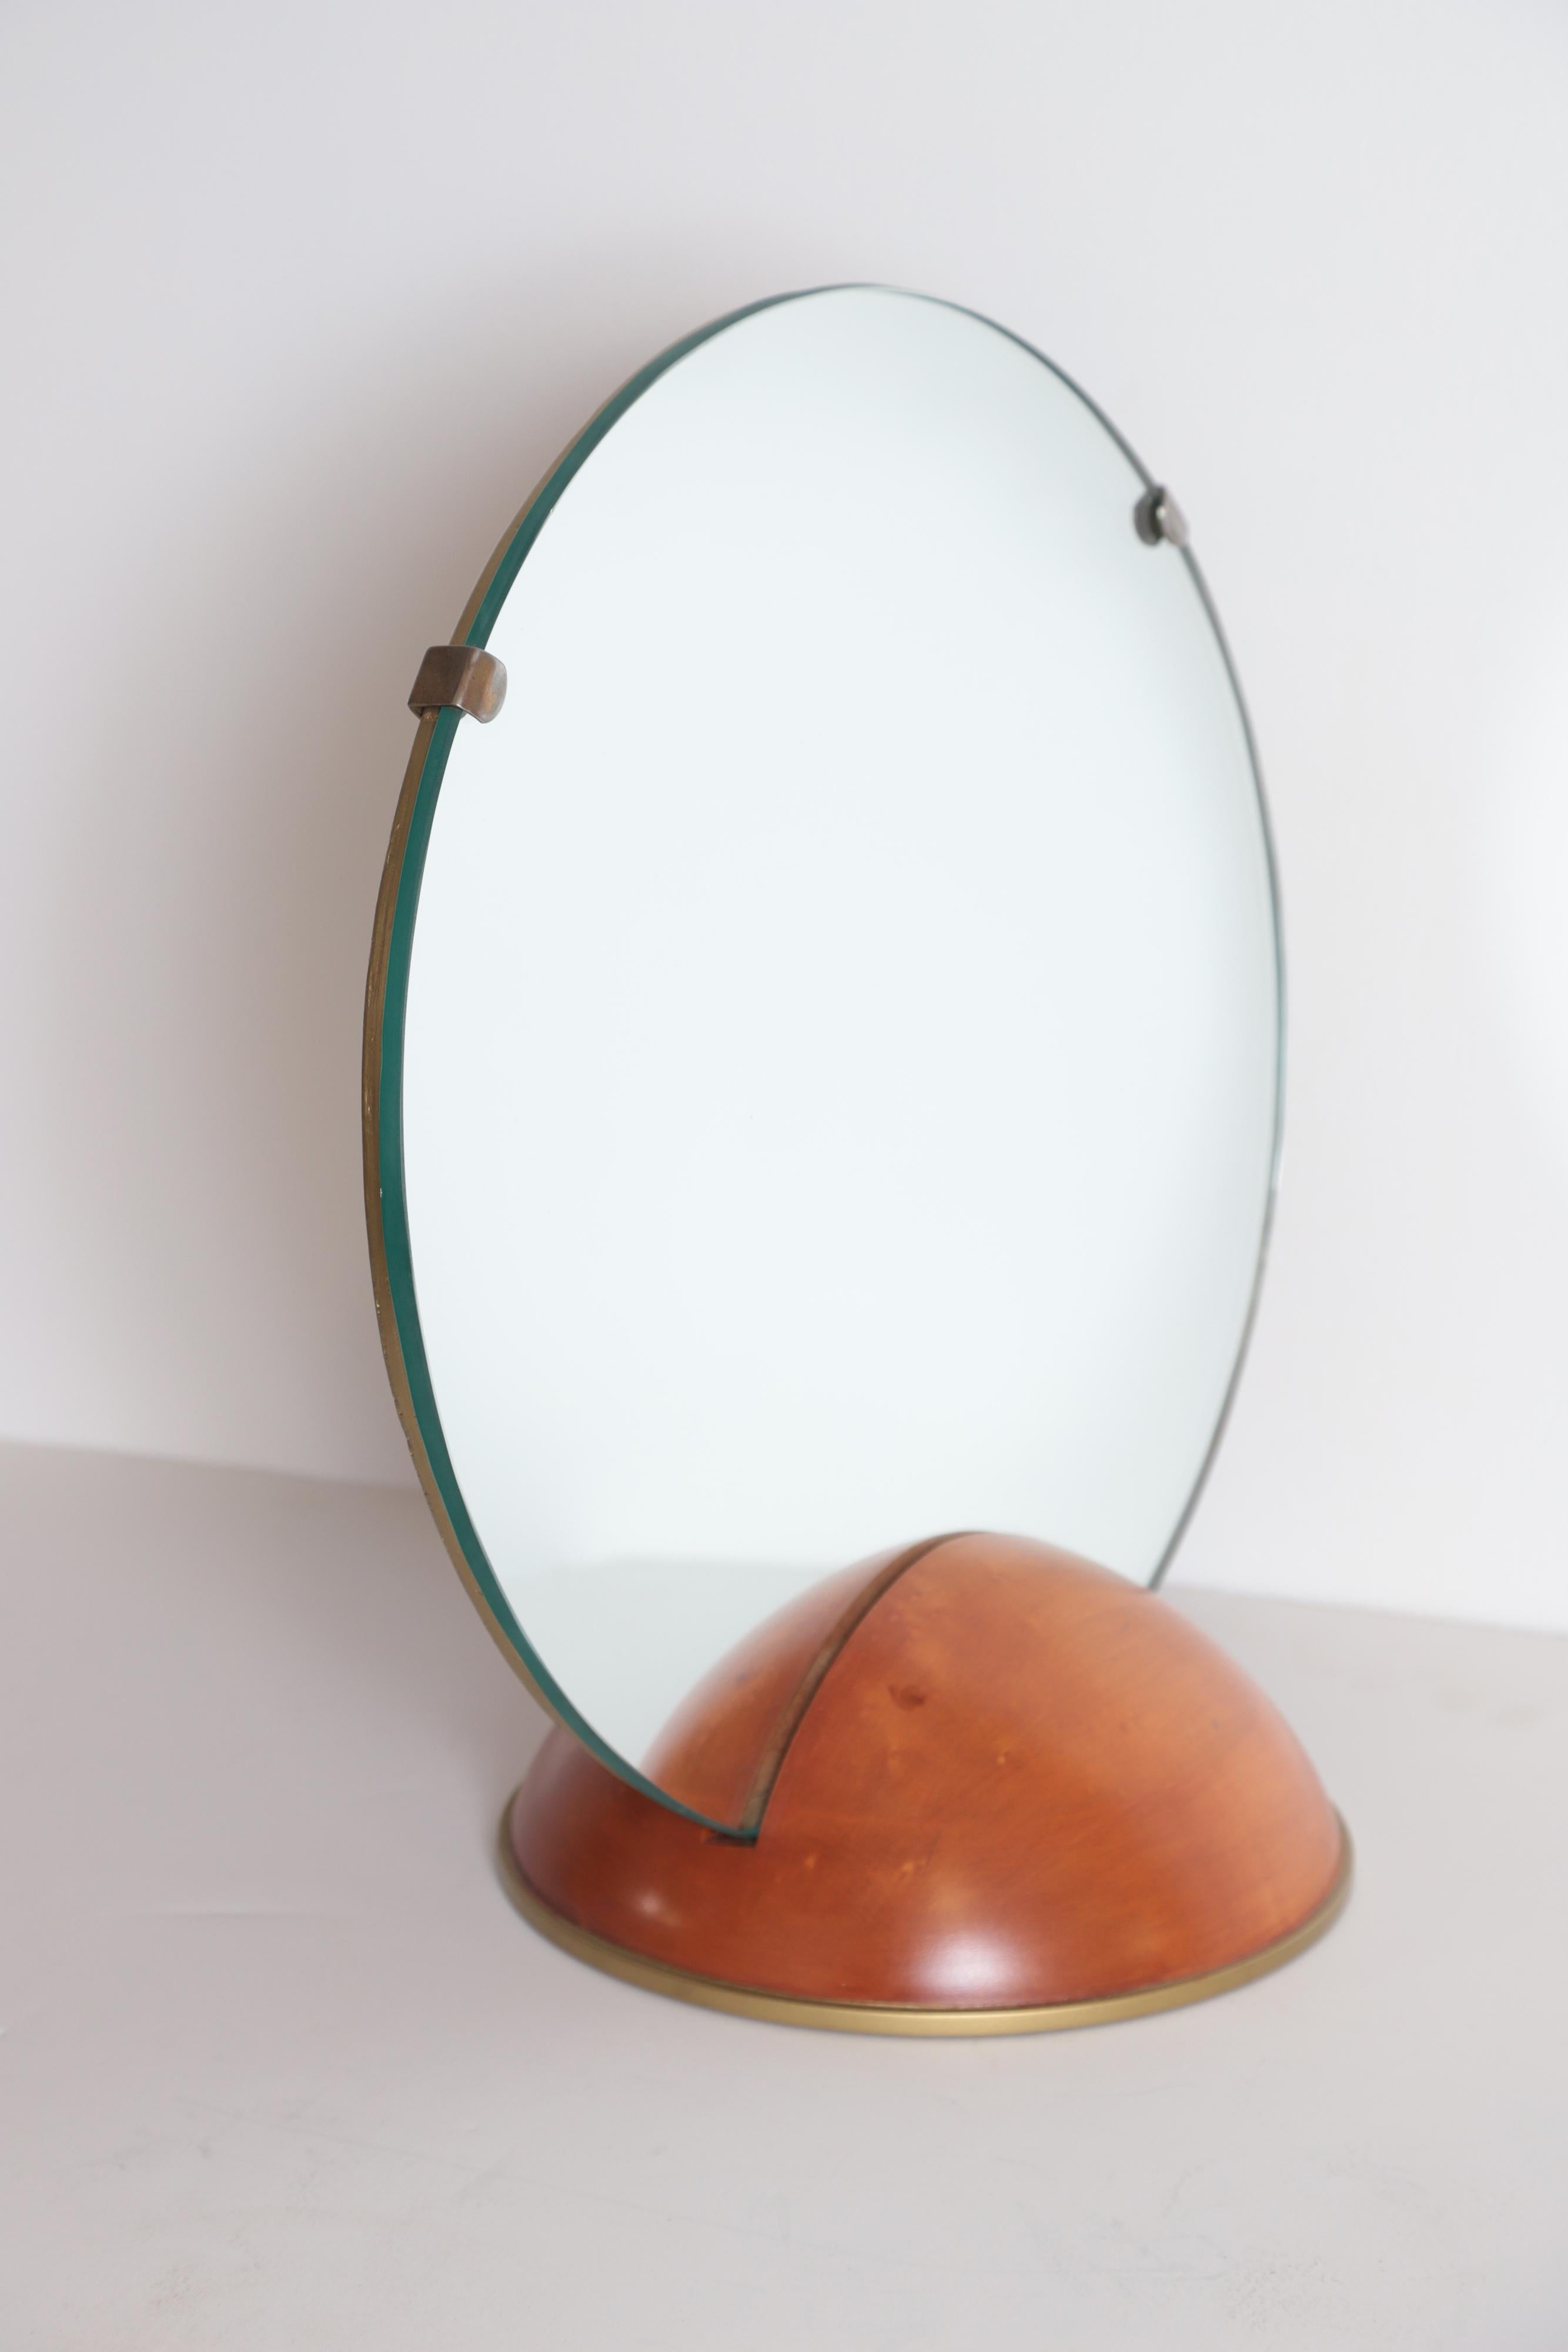 American Art Deco Mid-Century Modern Romweber Valet Mirror for Chest, Desk or Vanity For Sale